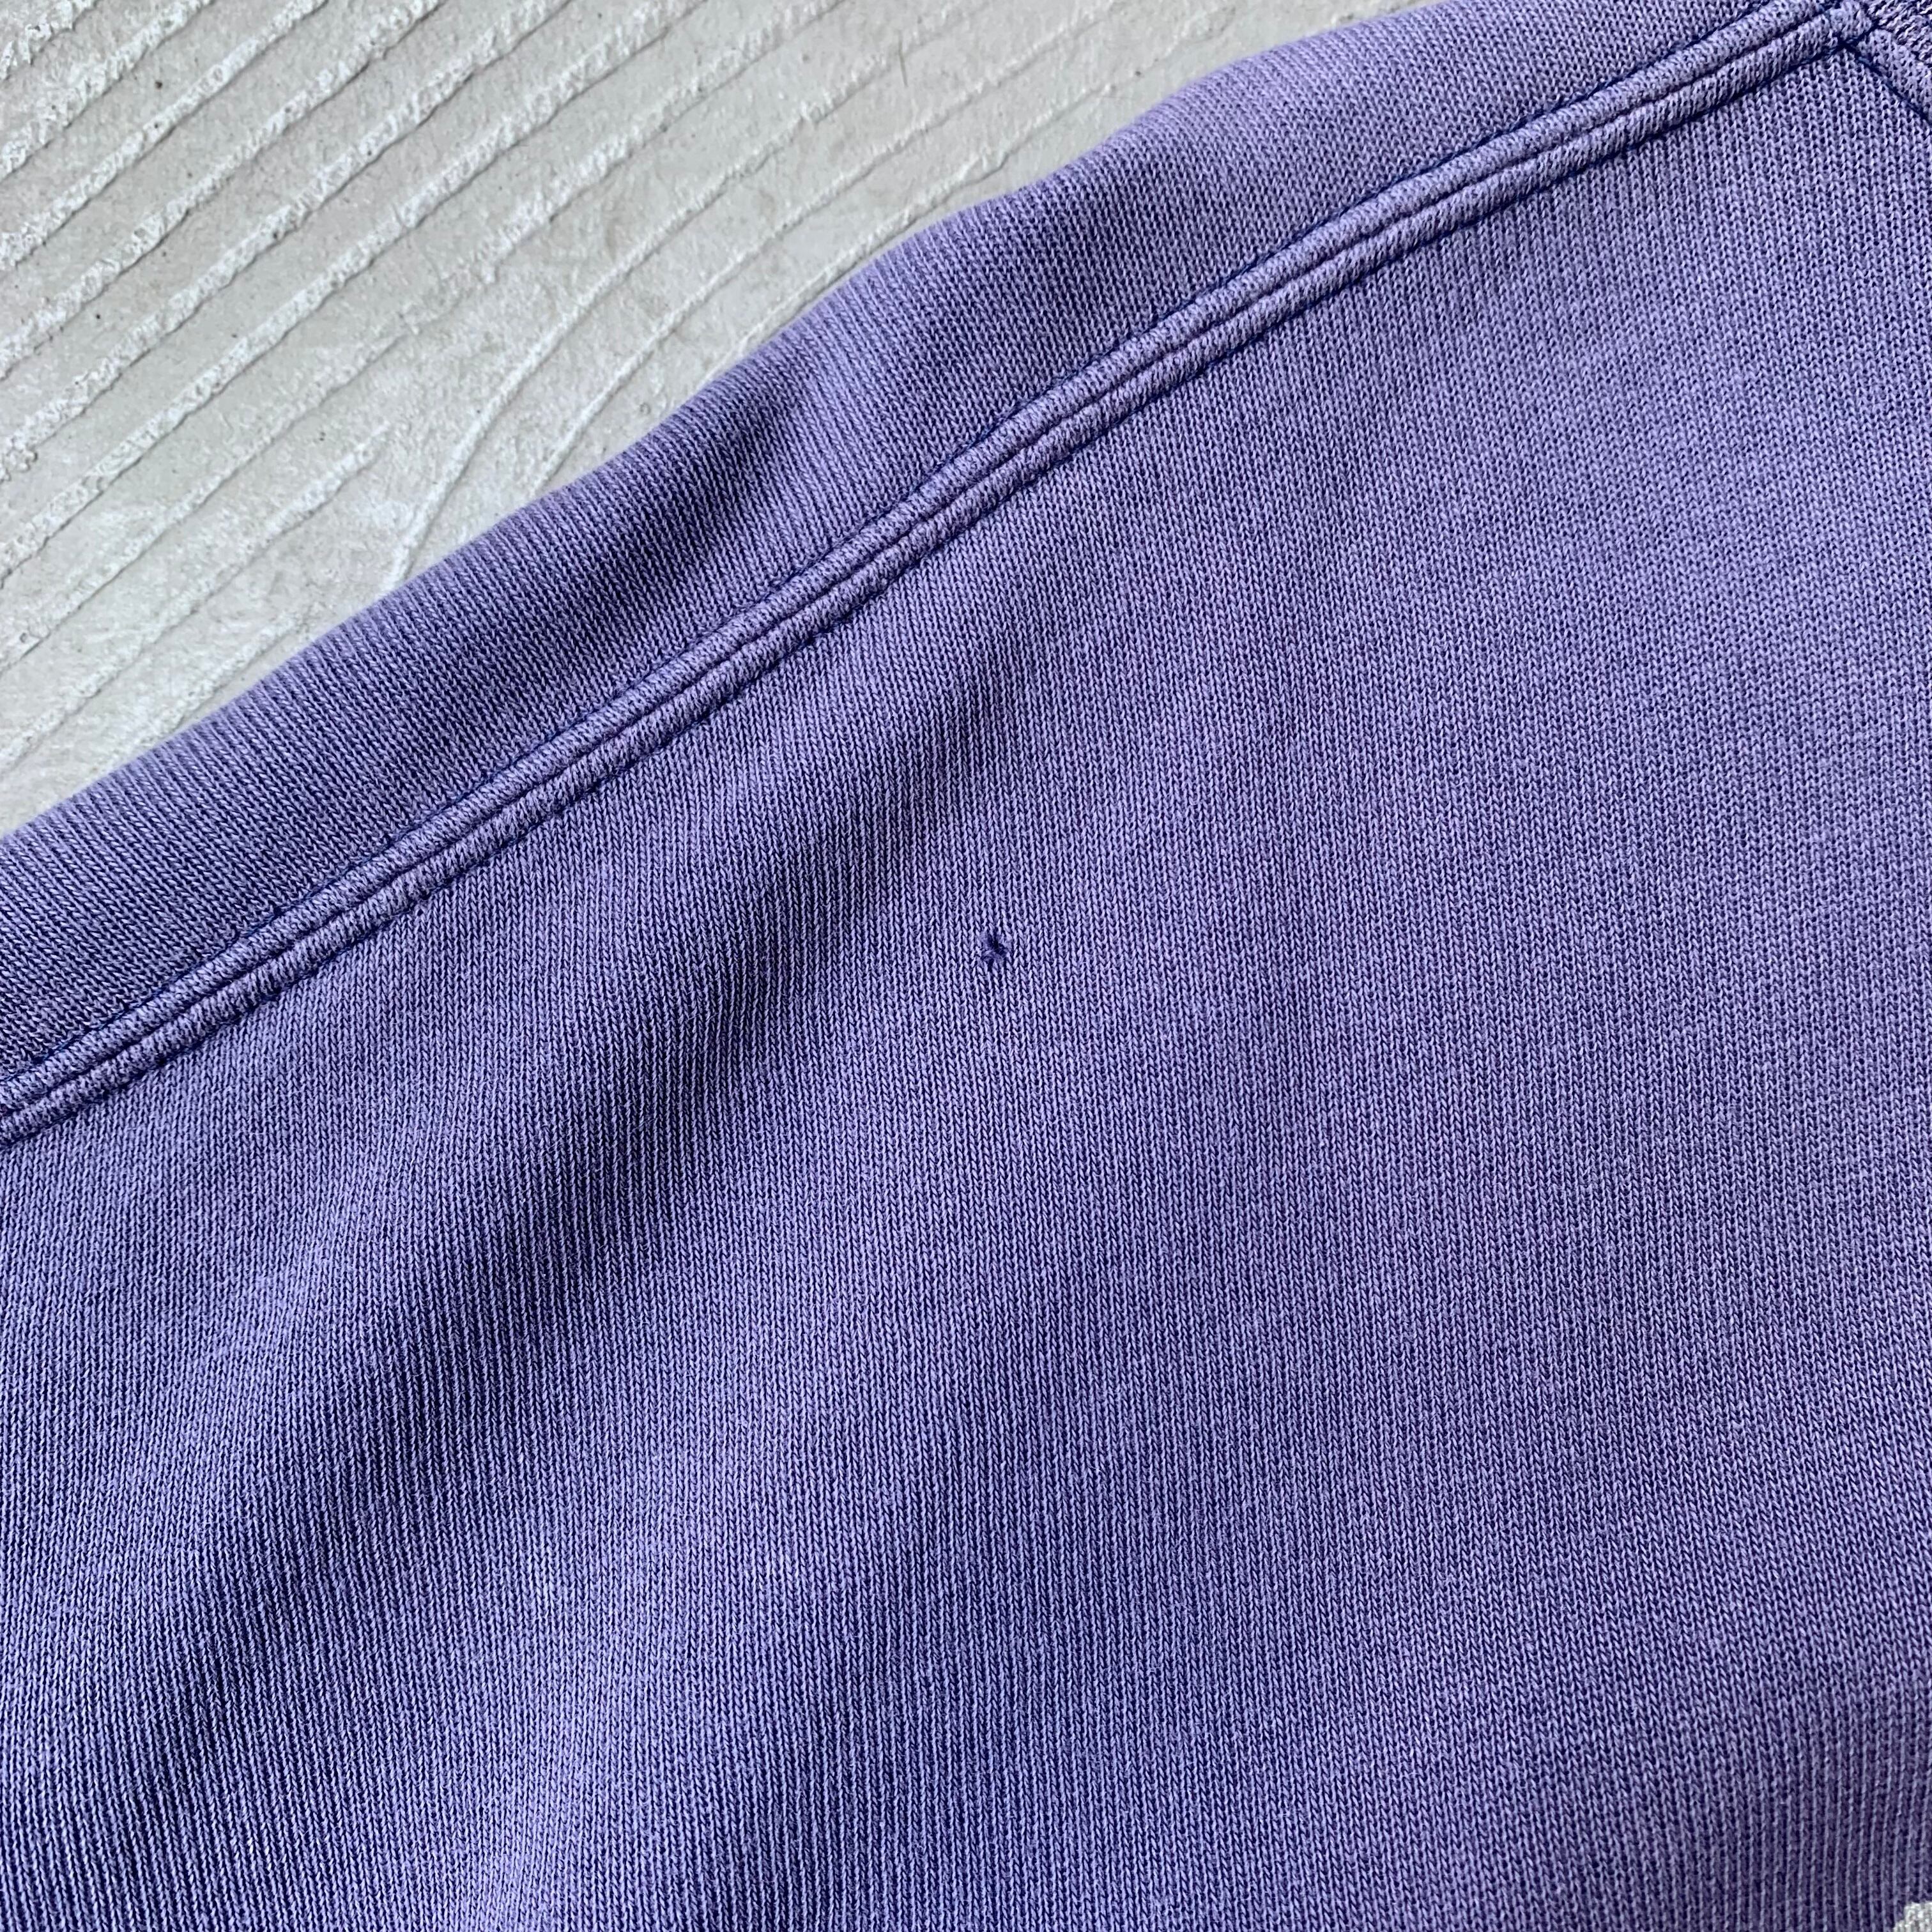 Mr.JUNKO / Faded purple sweat shirt | SAMUEL FINCH / Online store